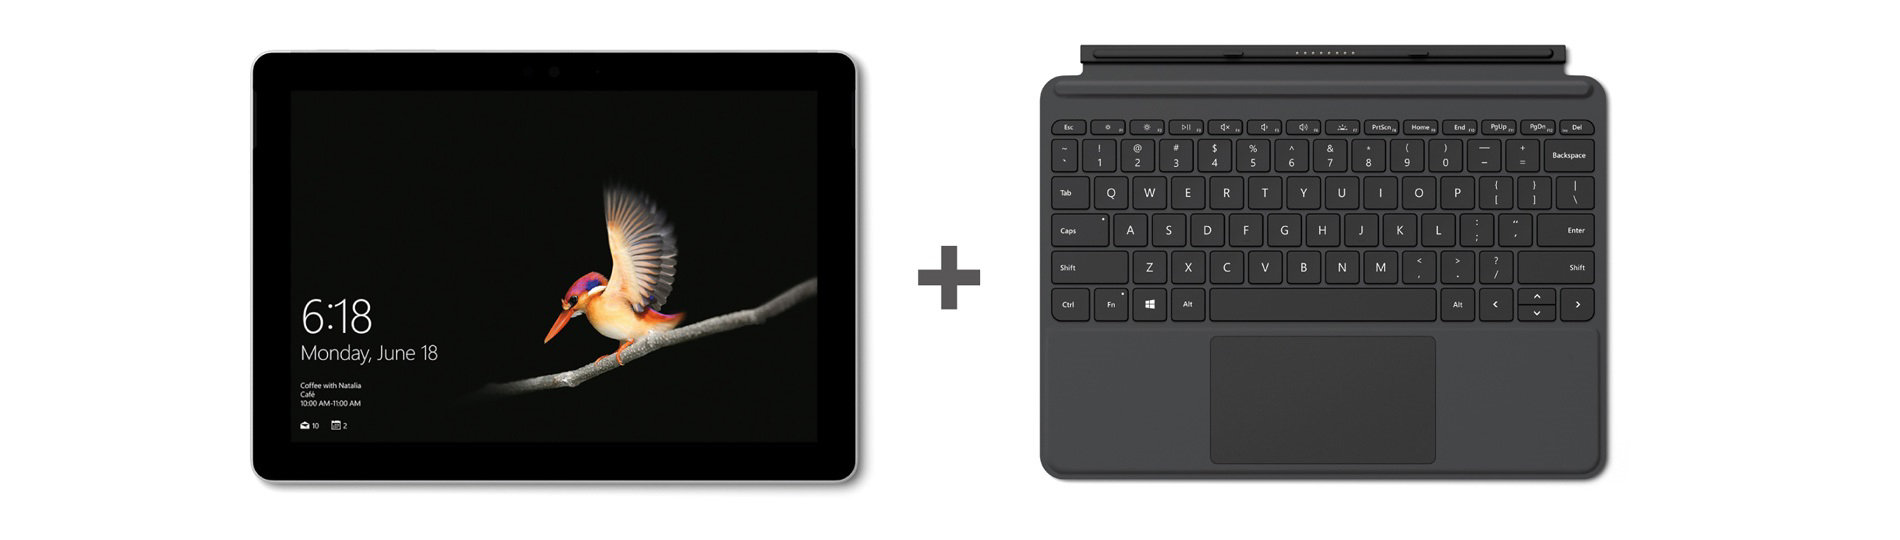 法人向け] Surface Go LTE Advanced と専用タイプ カバー同時購入で 